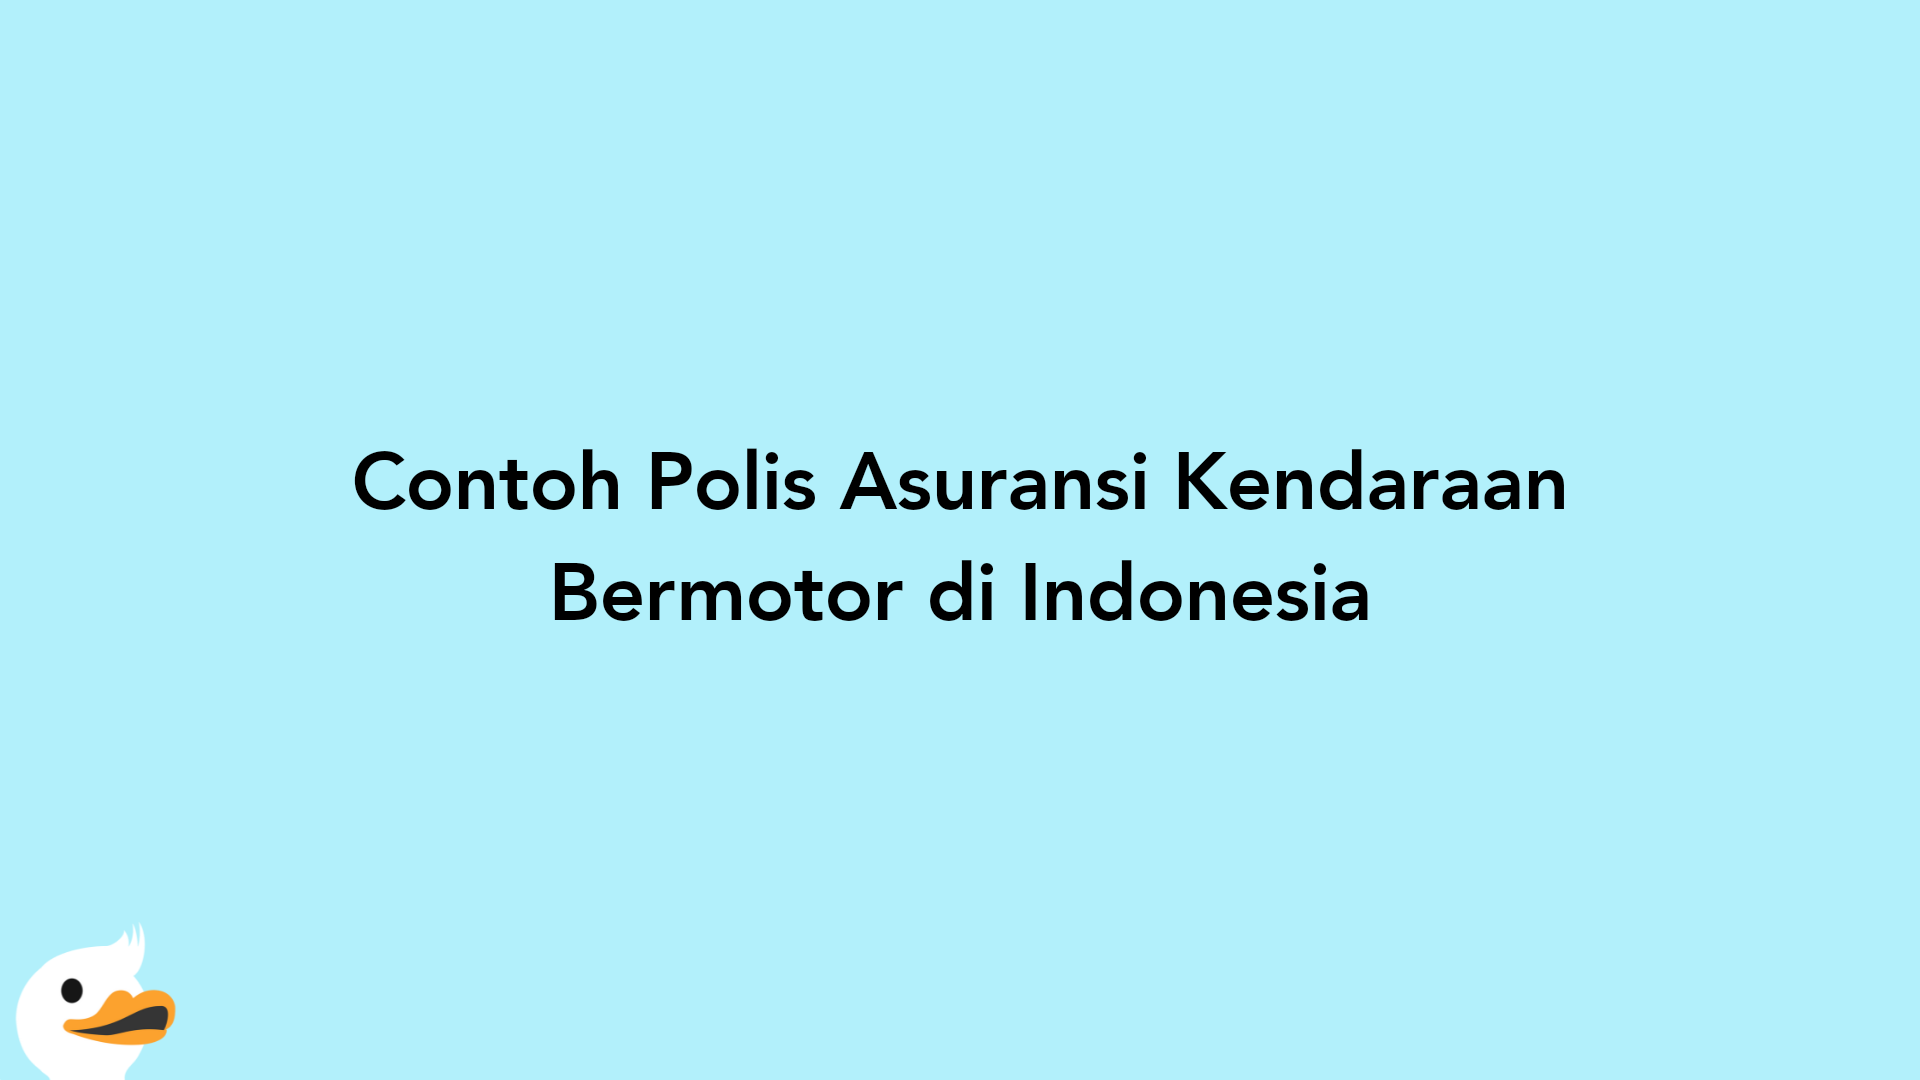 Contoh Polis Asuransi Kendaraan Bermotor di Indonesia